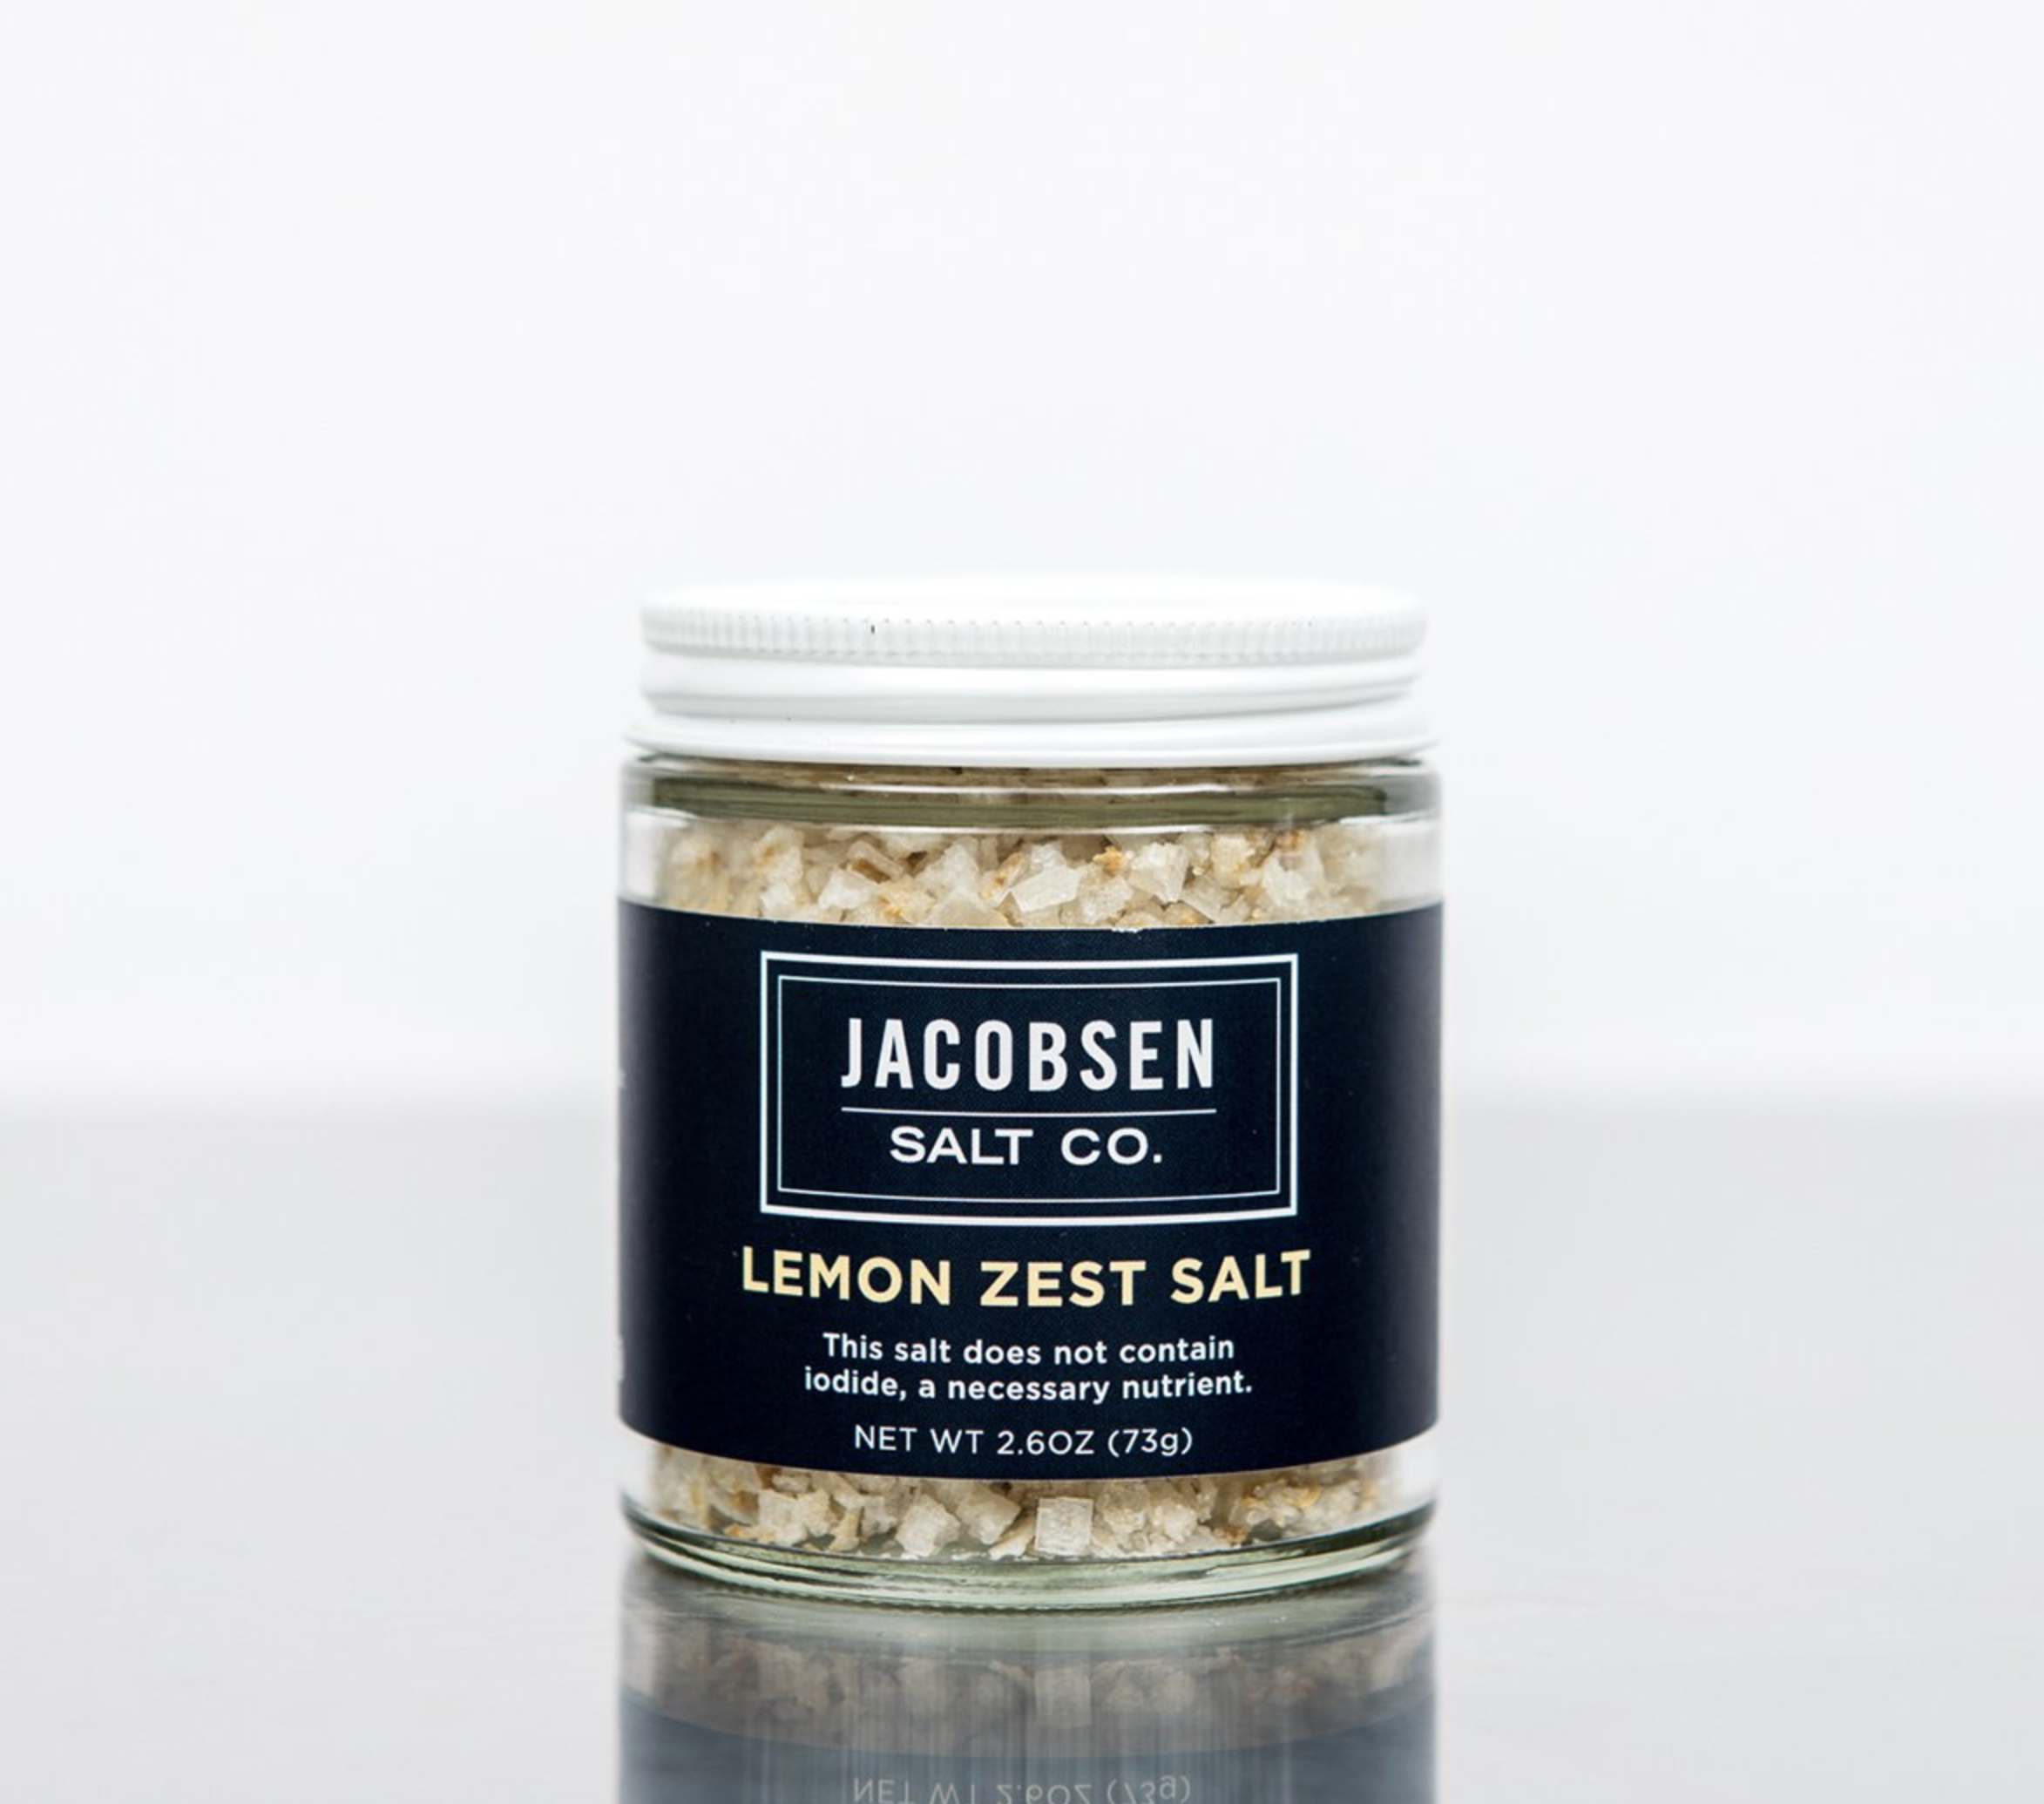 Jacobsen Salt Co. Lemon Zest Salt